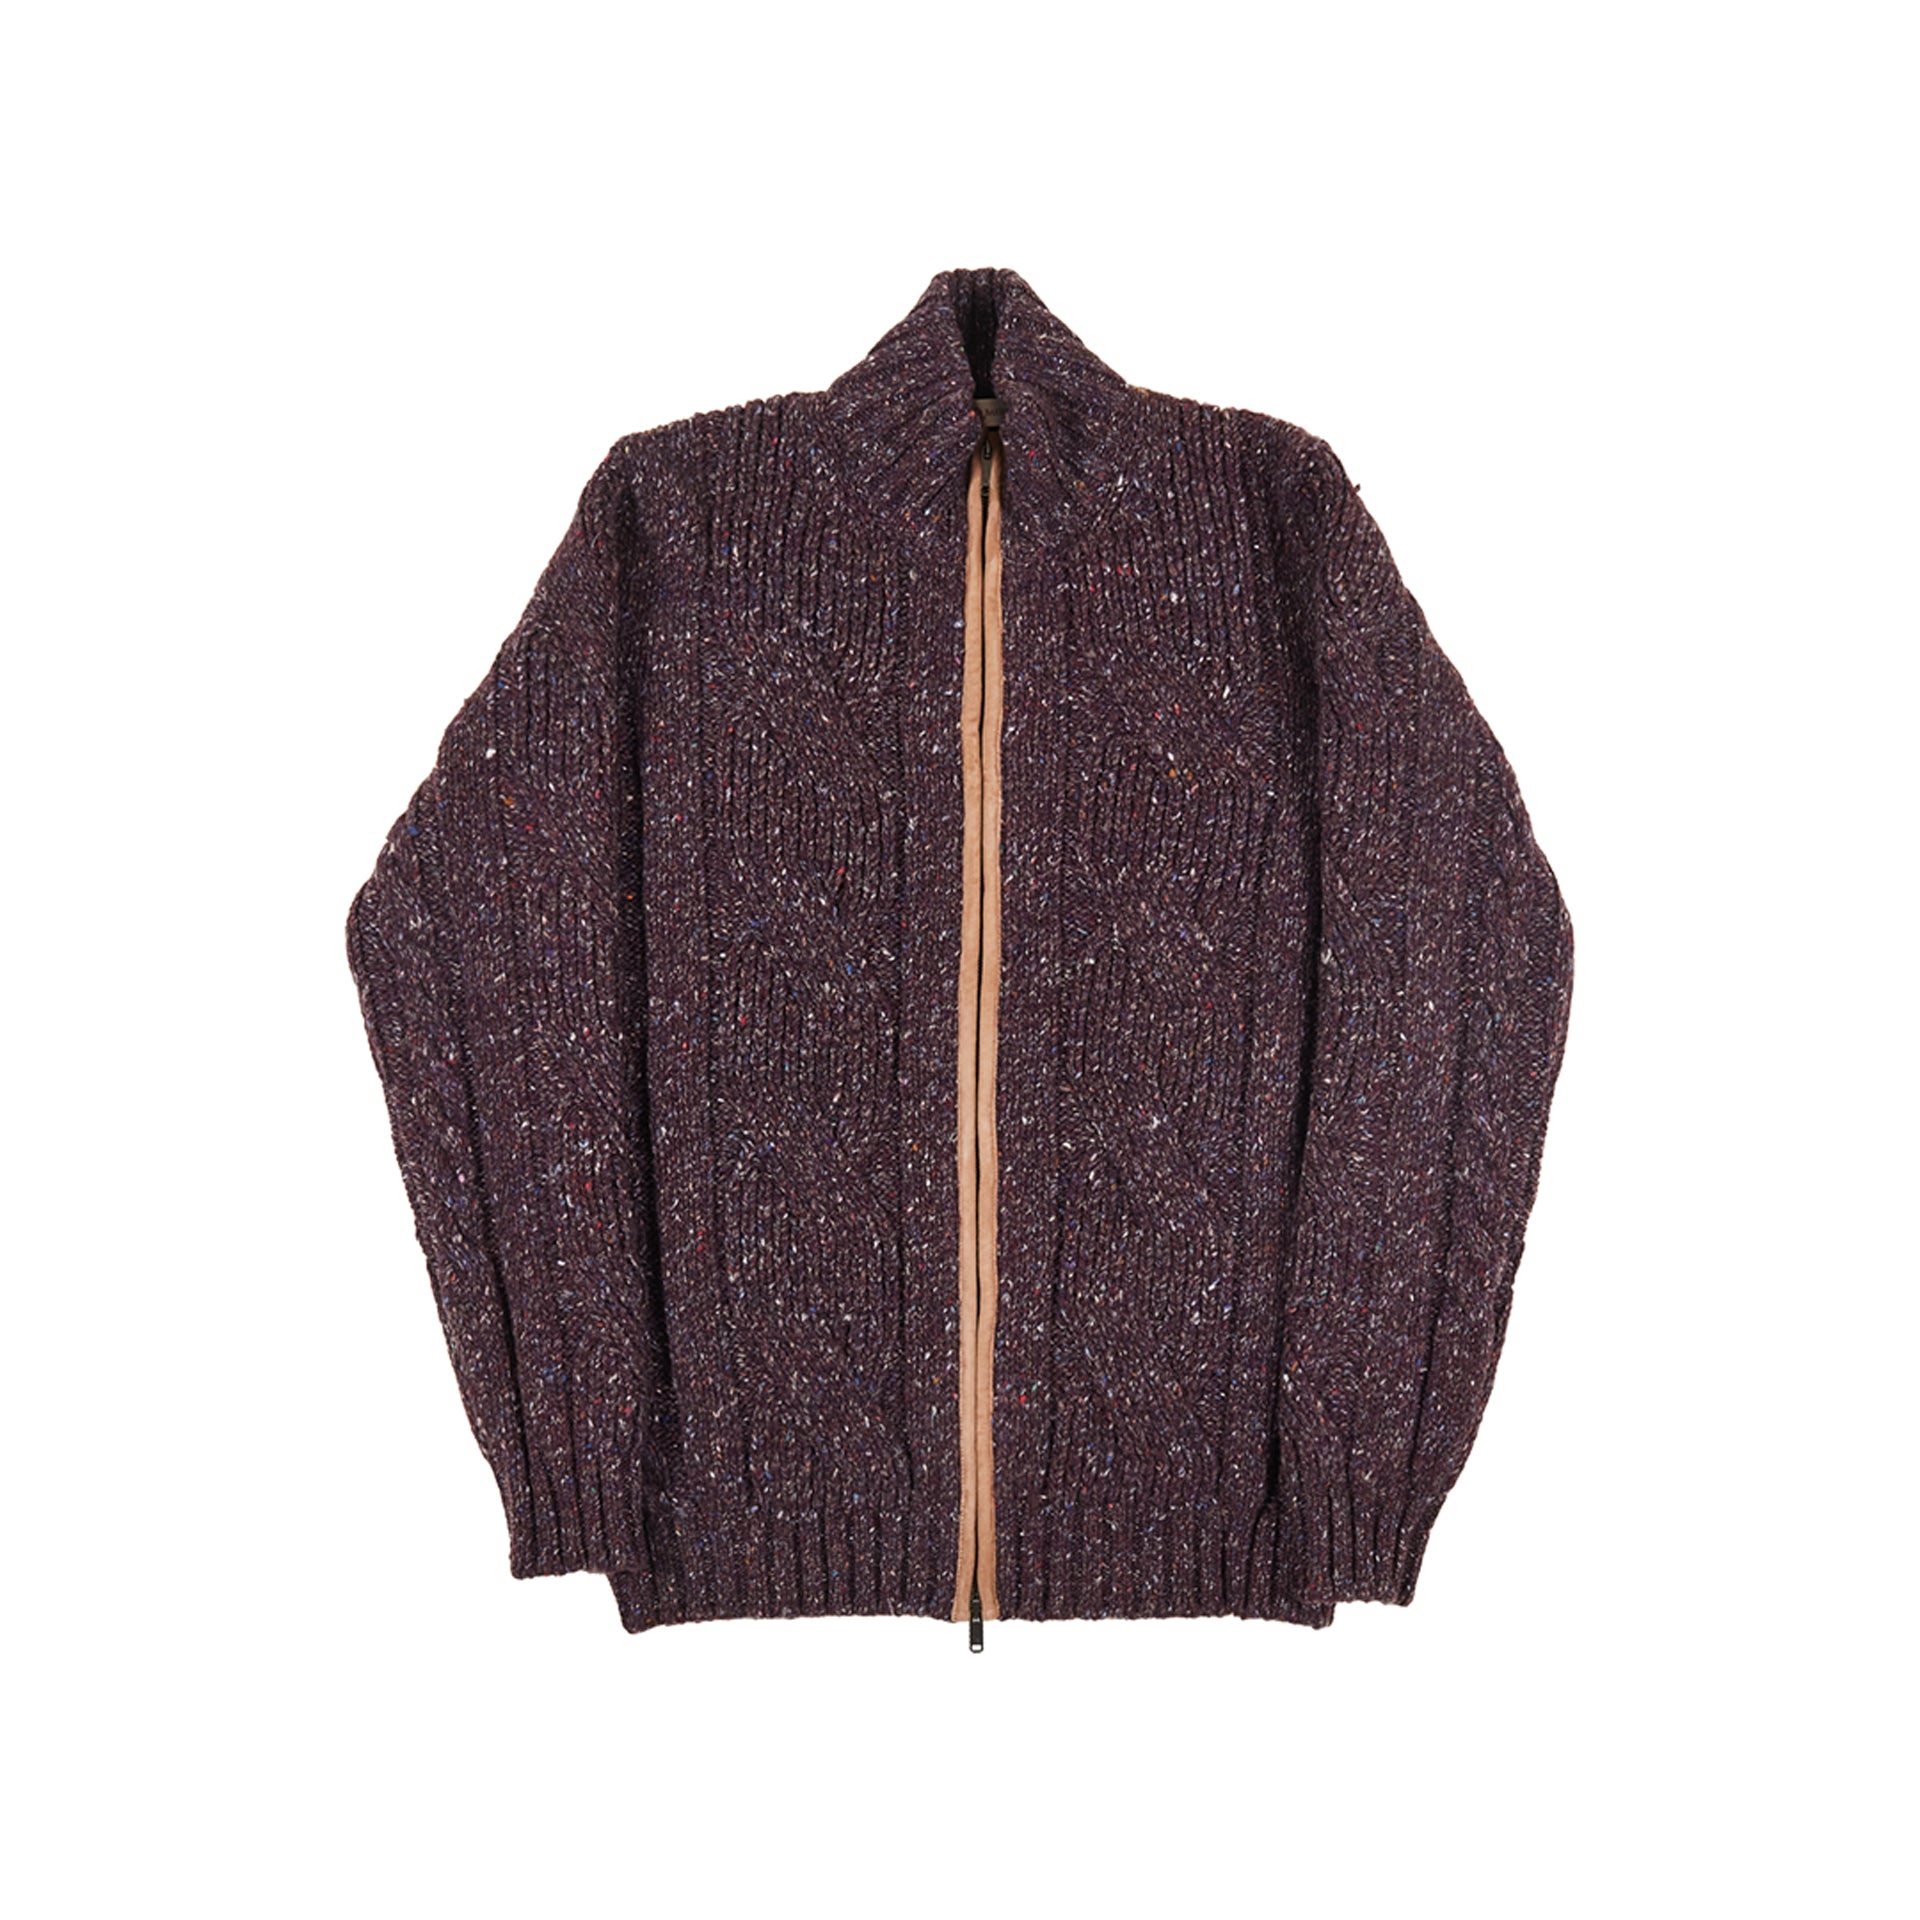 Full-Zipper Sweater